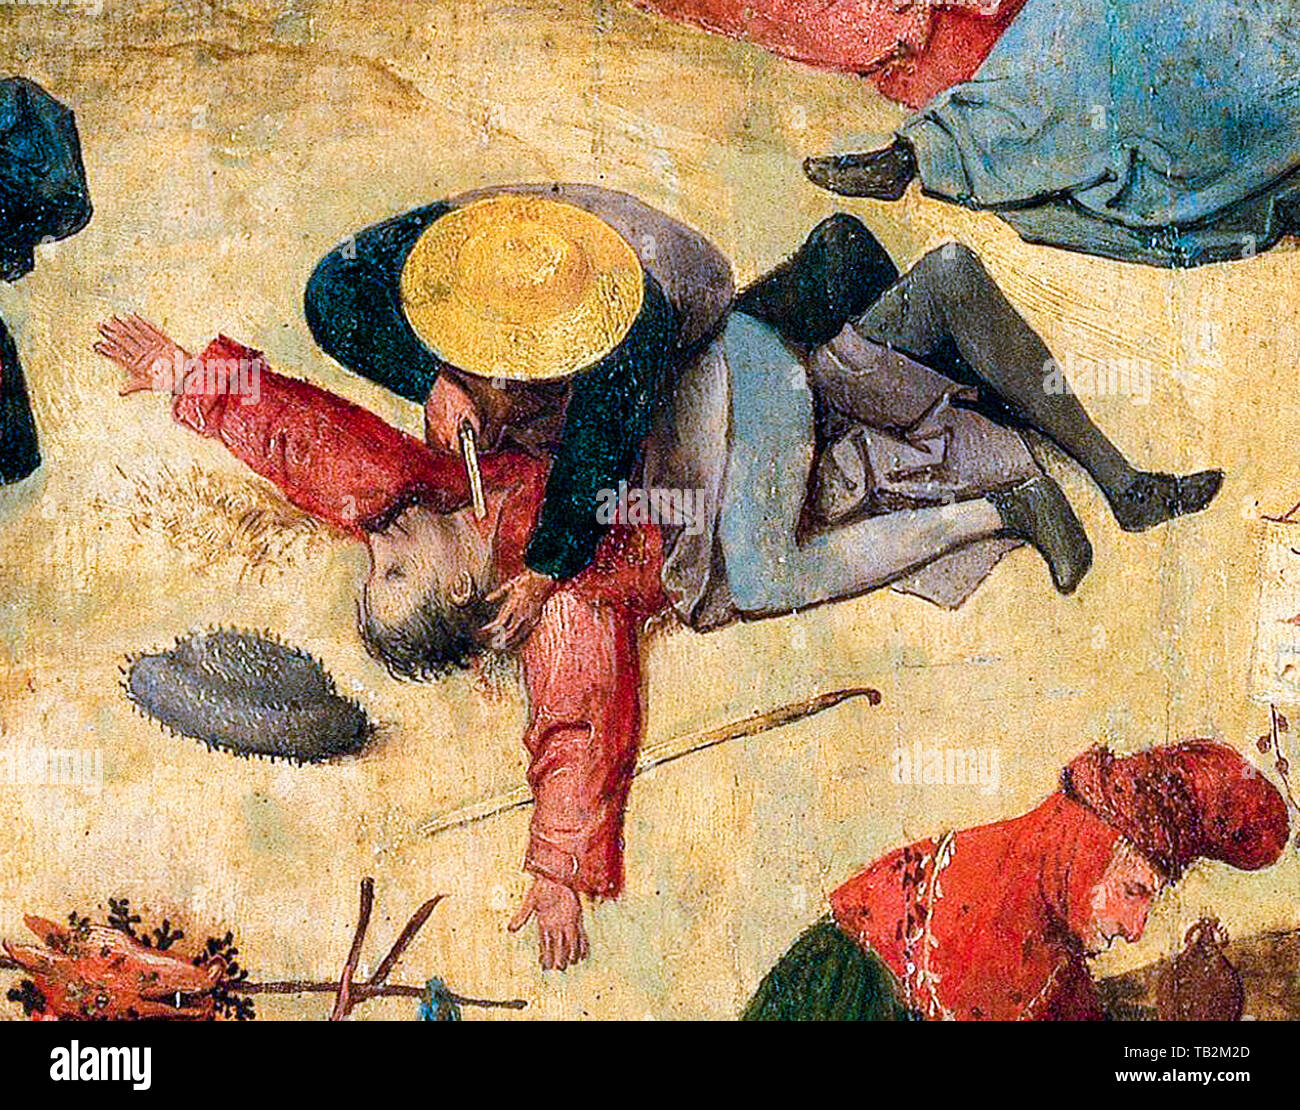 Hieronymus Bosch, il carro fieno (Prado), pannello centrale, dettaglio, uomo taglia la gola di un altro uomo con un coltello, omicidio, pittura, circa 1516 Foto Stock